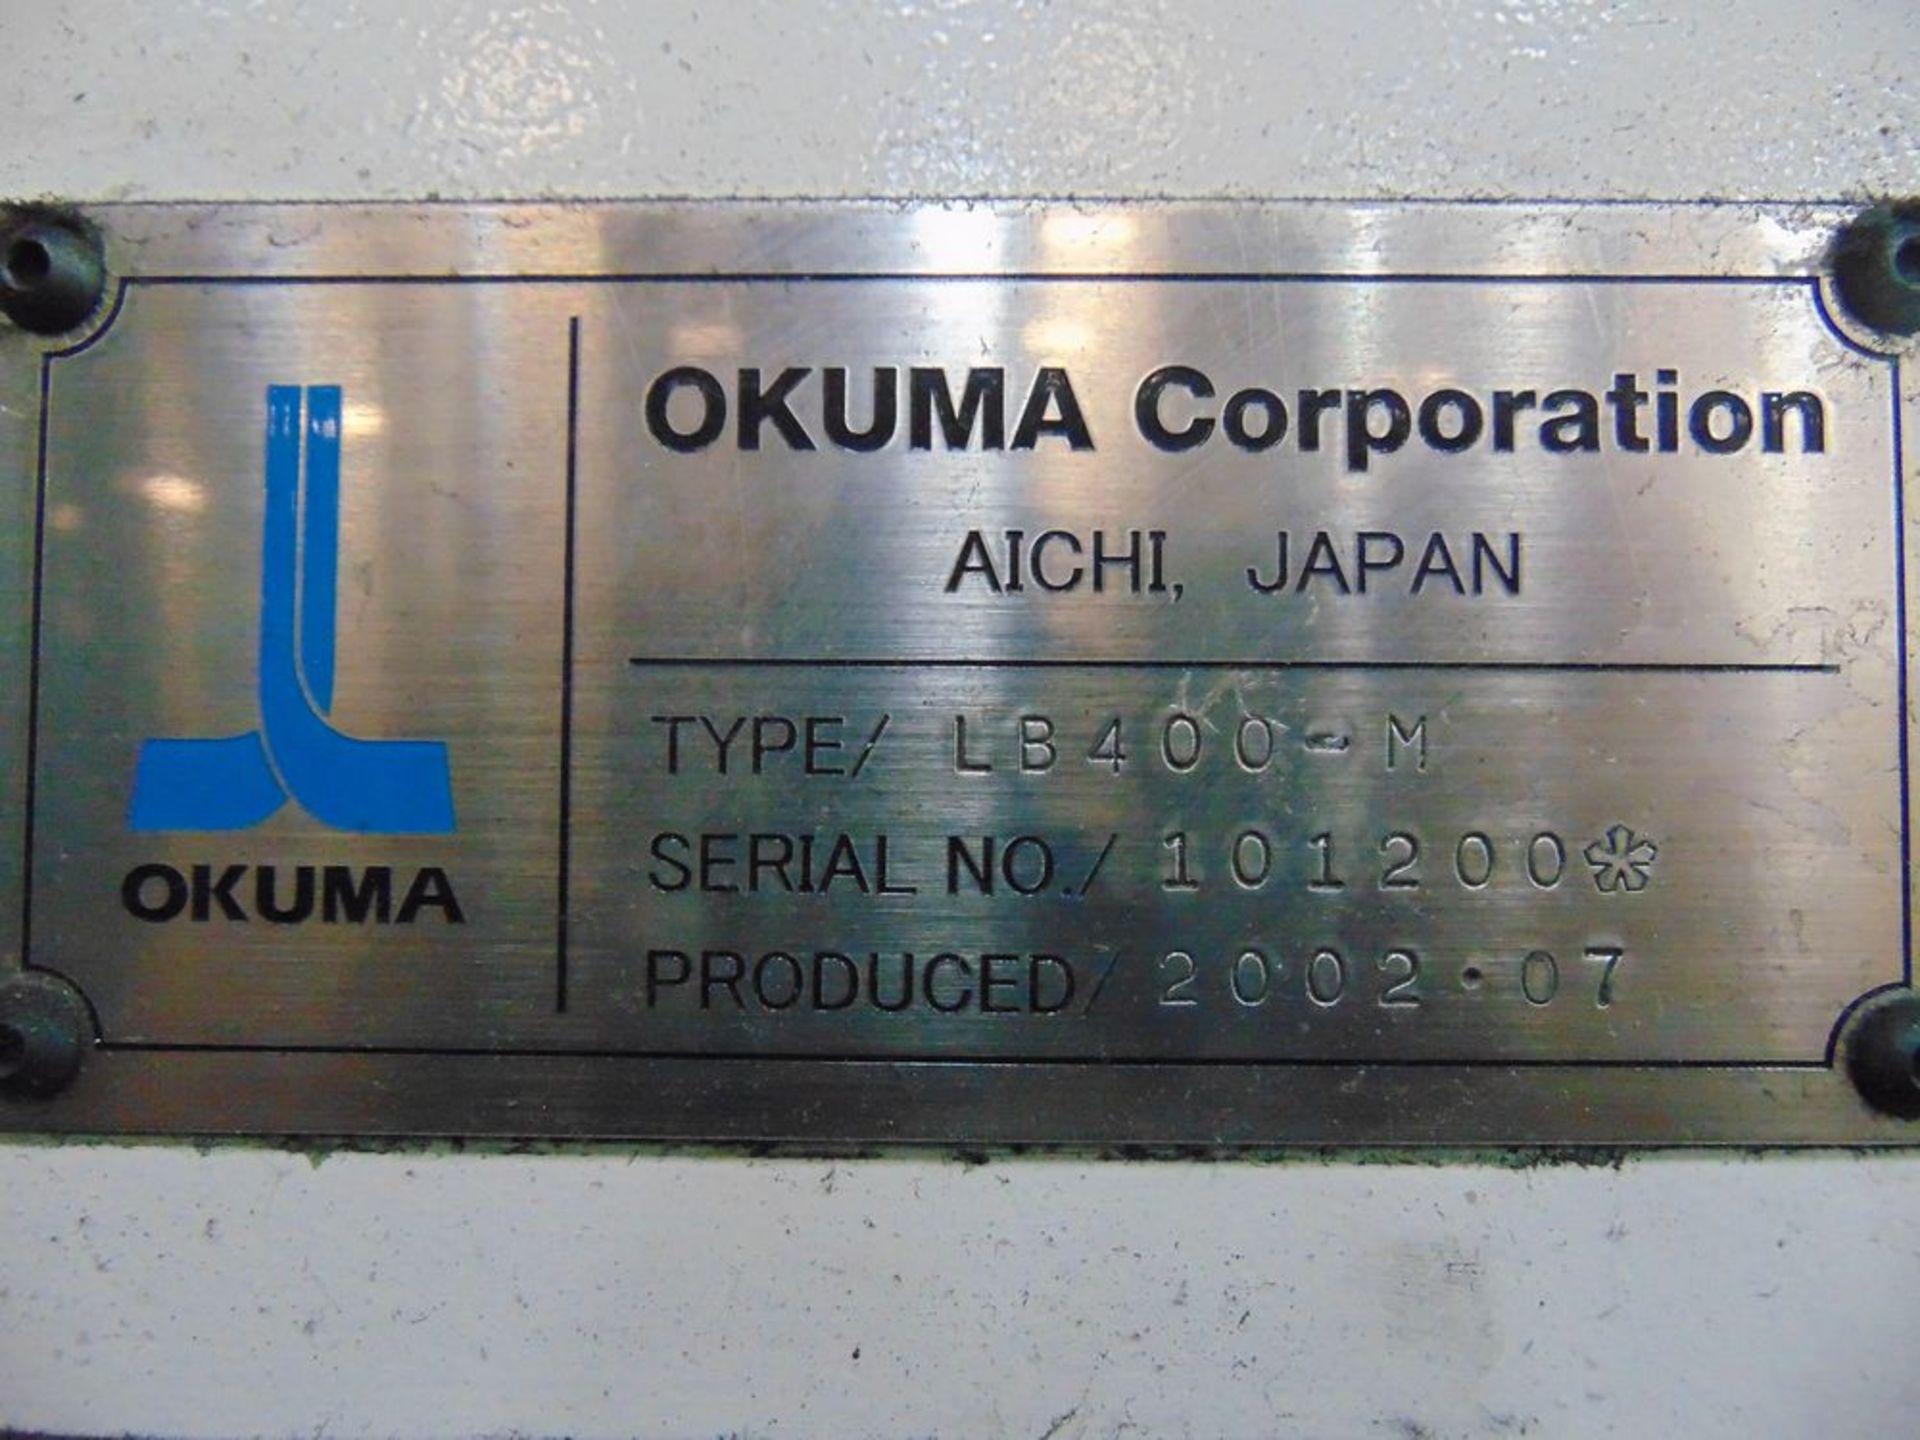 (2002) Okuma mod. L470 Captain Type LB400-M CNC Turning Center w/ Okuma OSP-E100L Controls, 12- - Image 5 of 5